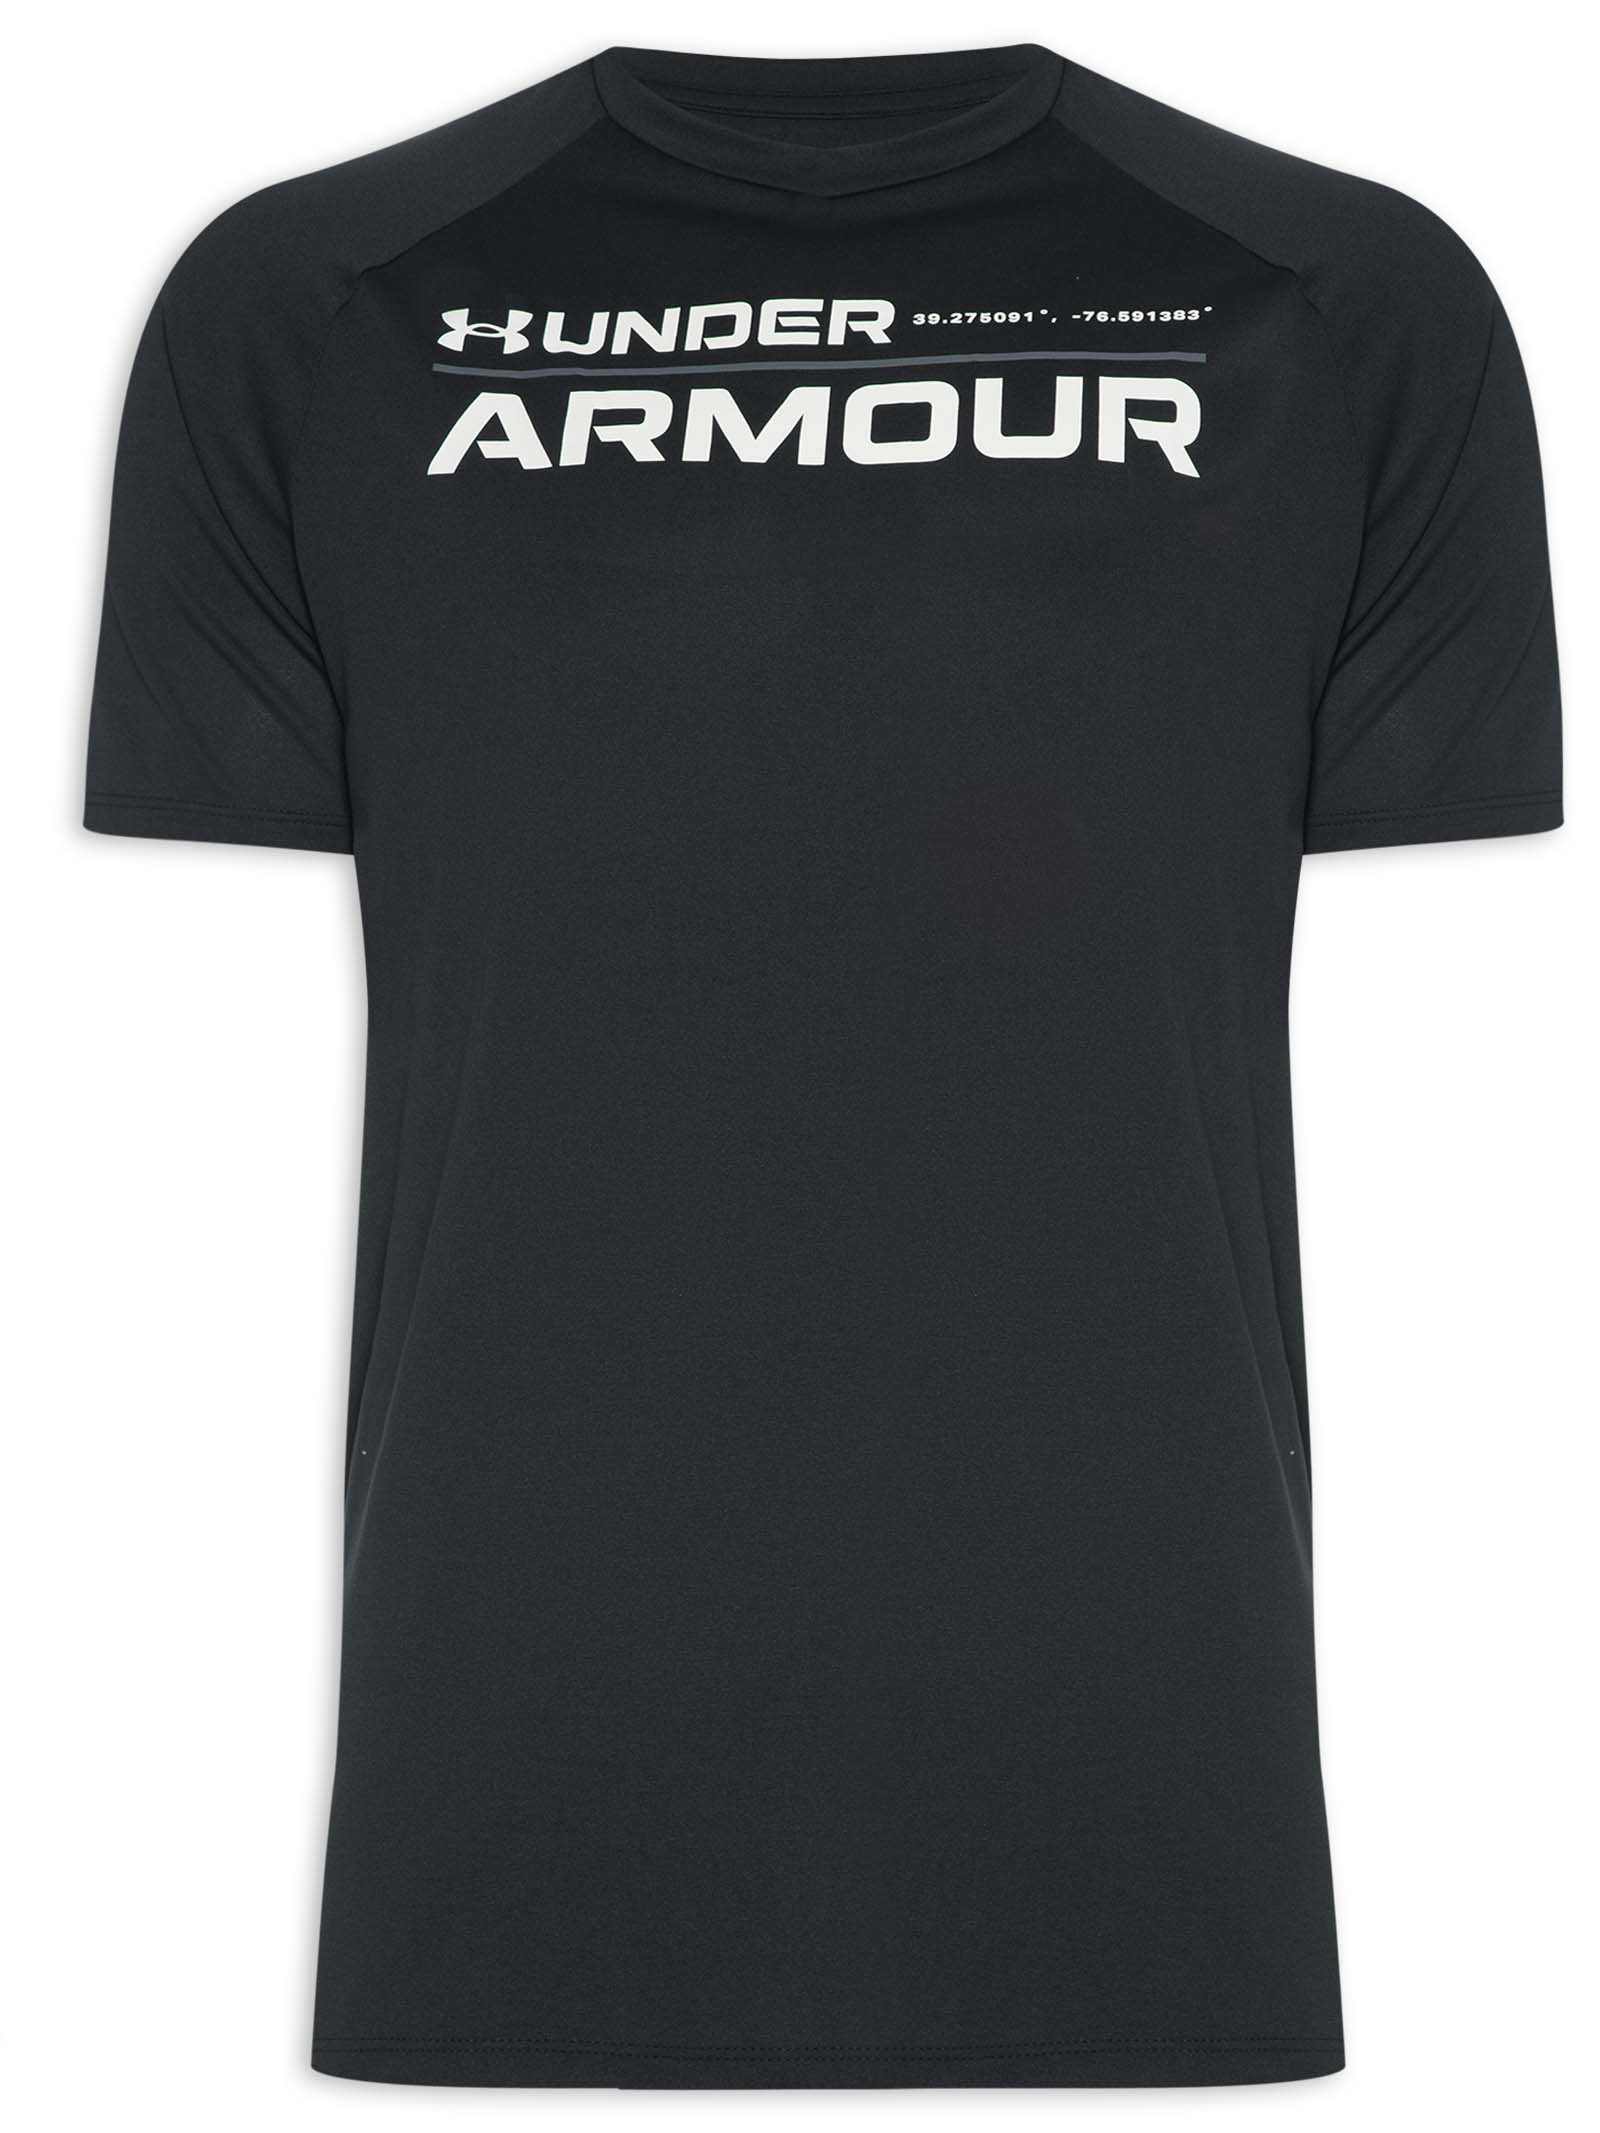 Camiseta Masculina Ua Tech 2.0 Word - Under Armour - Preto - Shop2gether